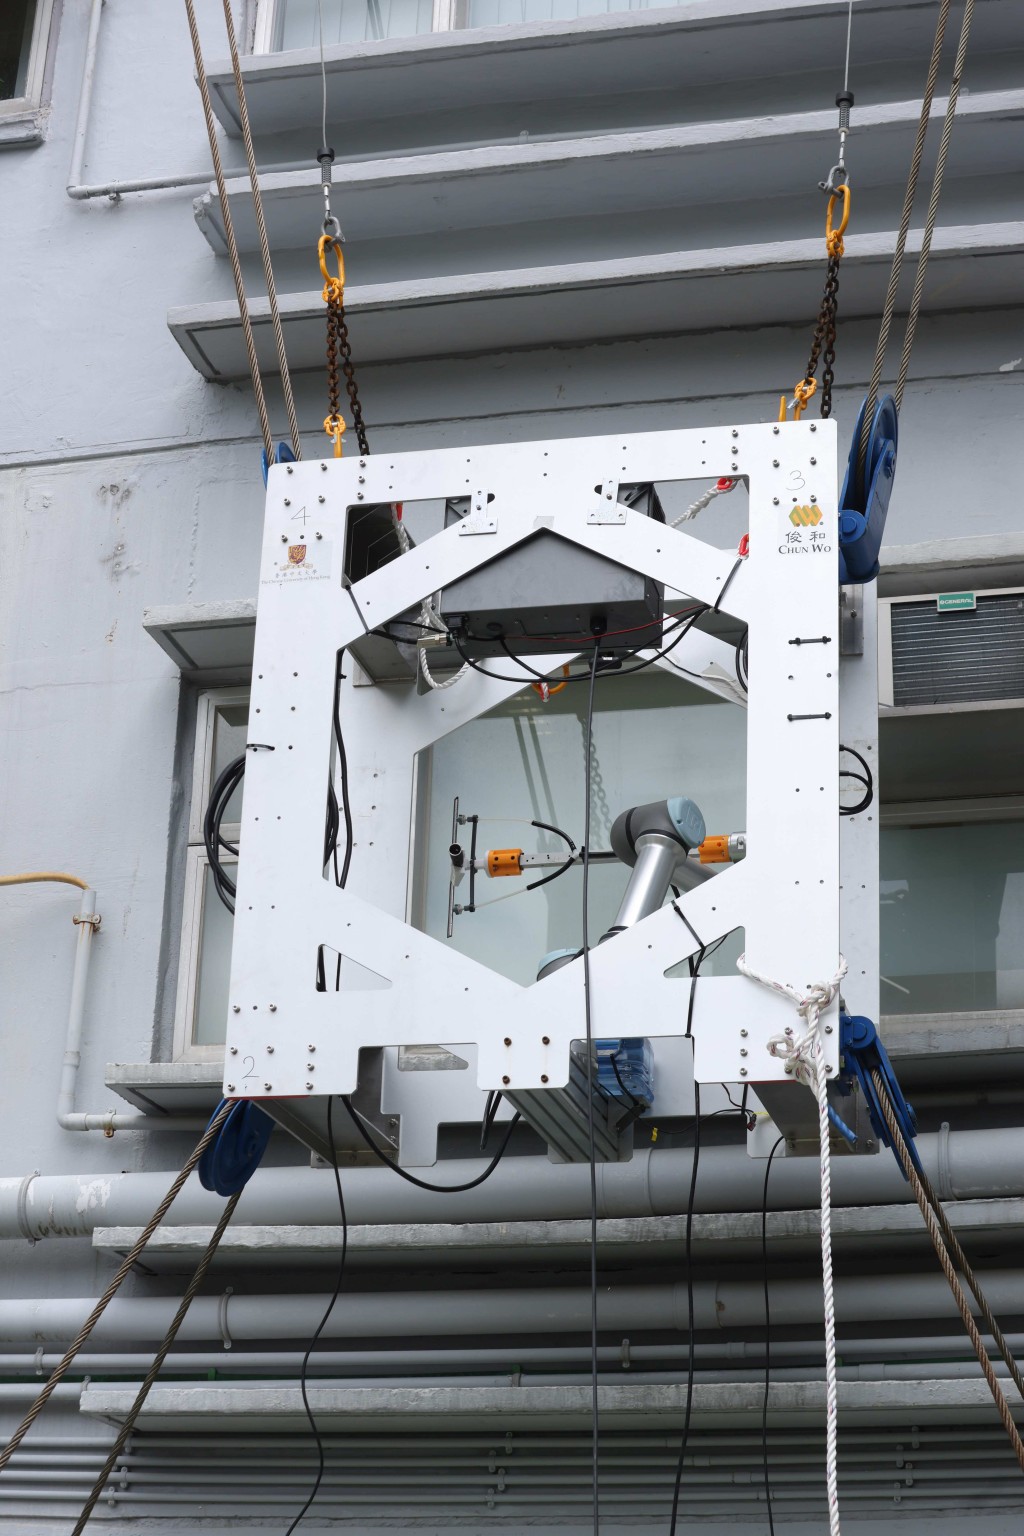  線控機械人系統安裝於中大校園一幢建築物外牆進行測試及示範。